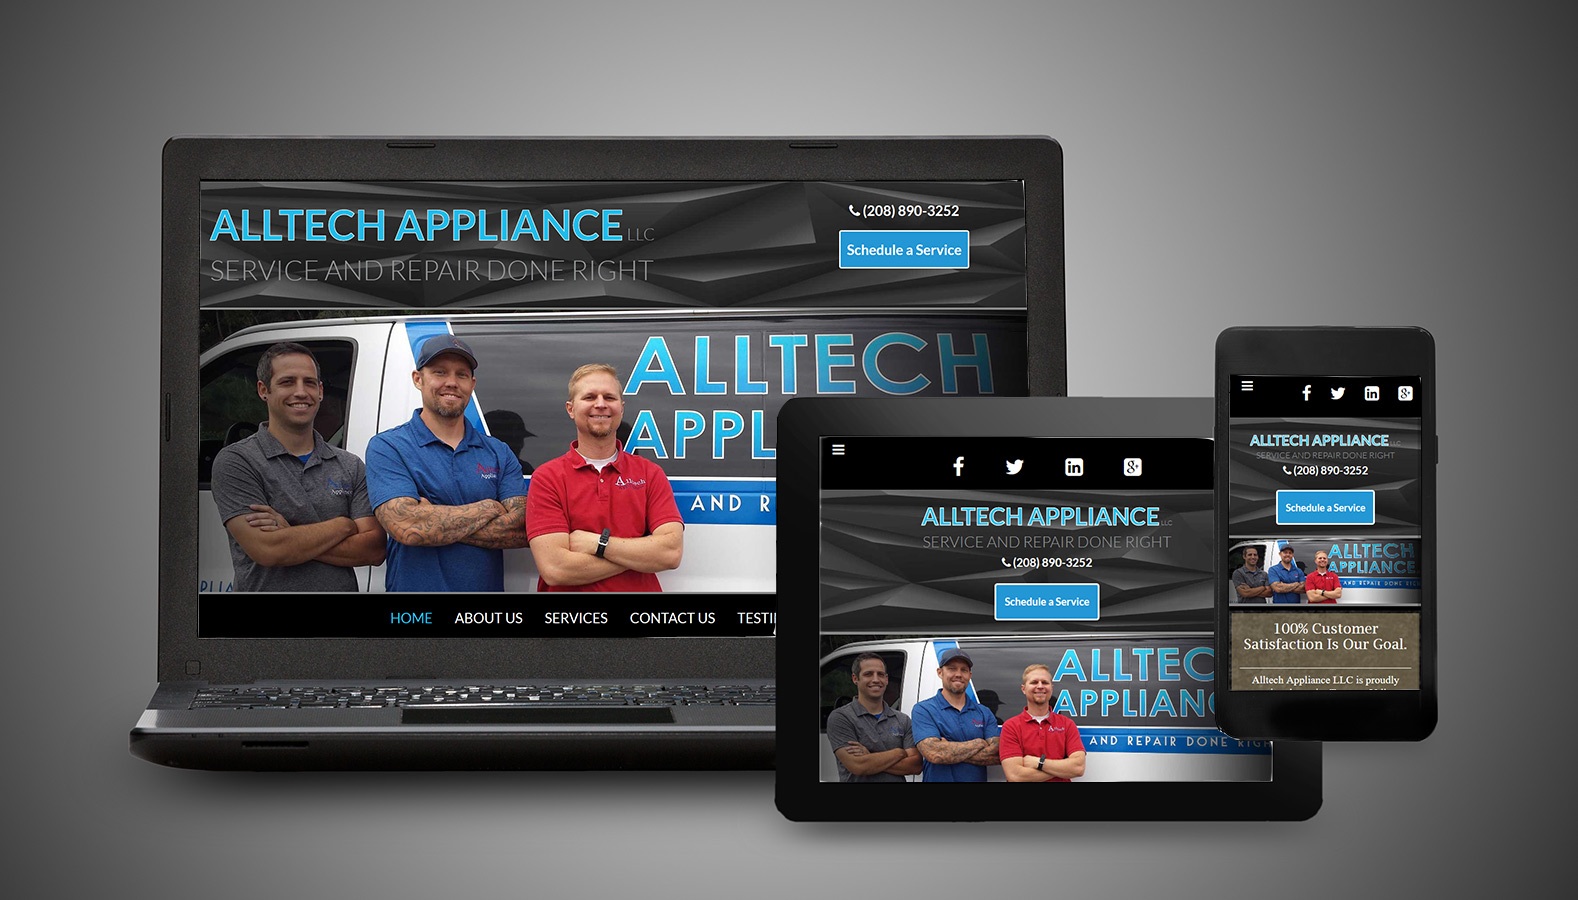 Alltech-Appliance